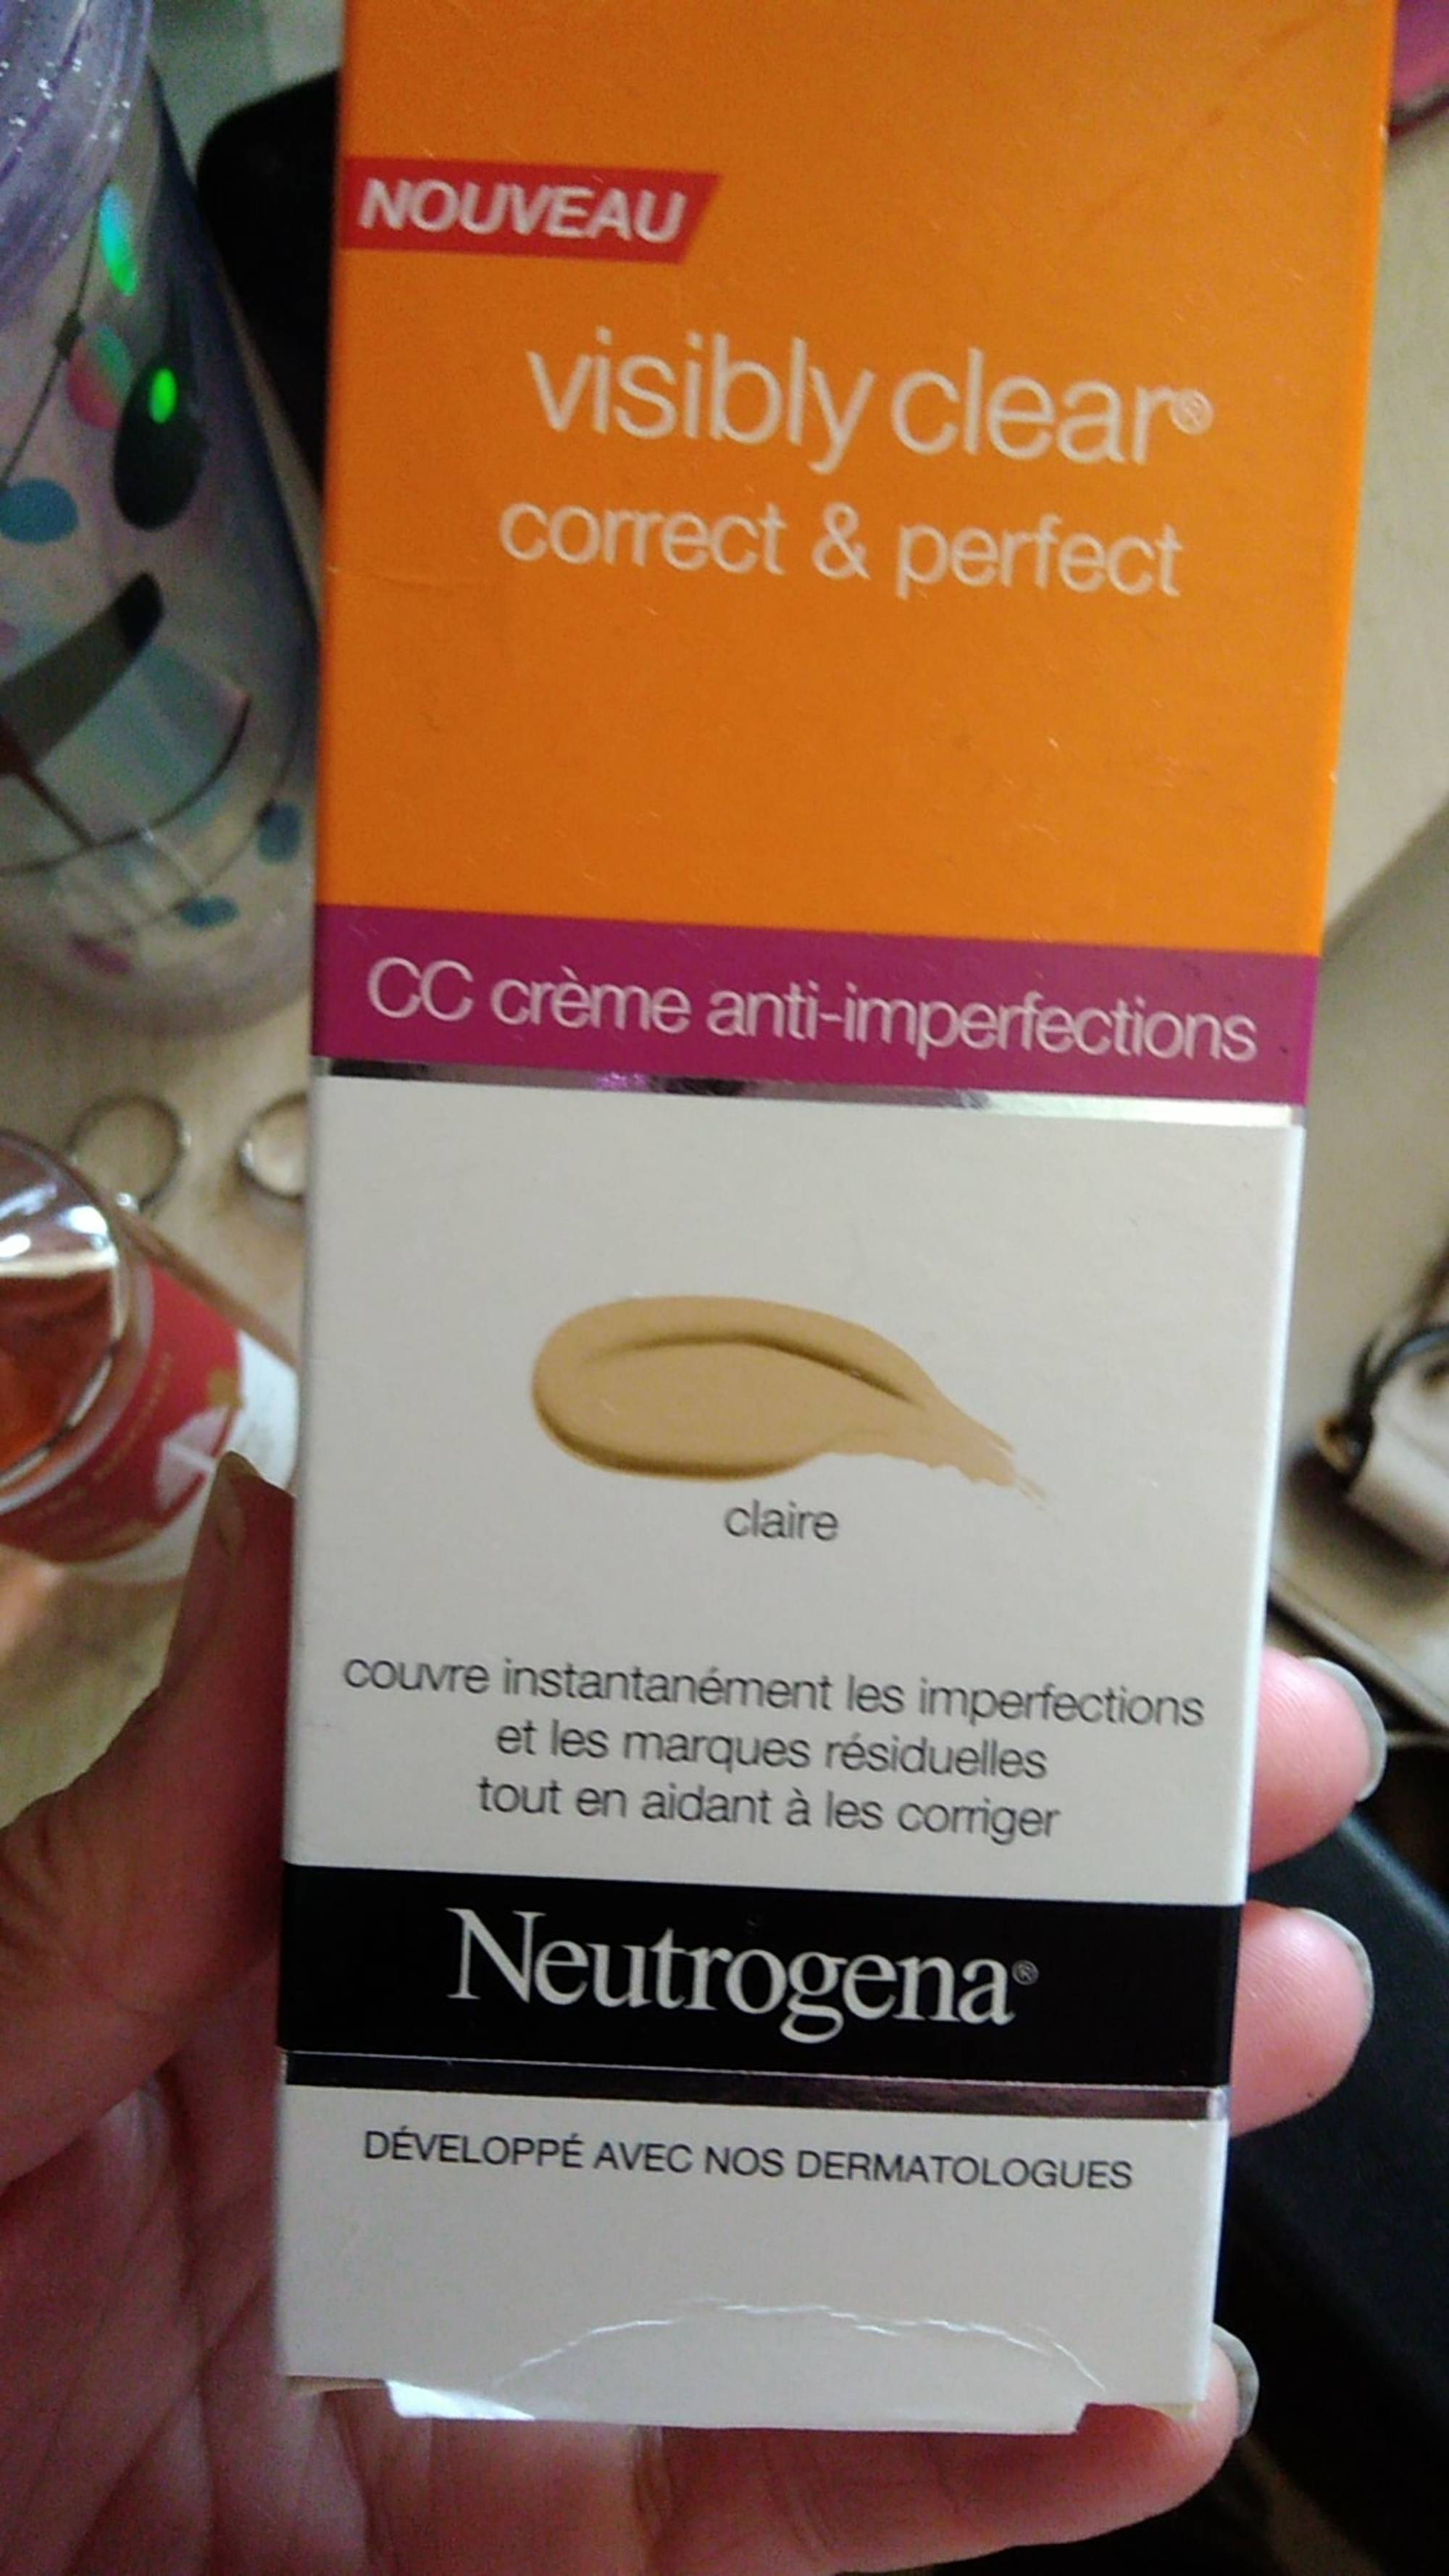 NEUTROGENA - CC Crème anti-imperfections - Claire